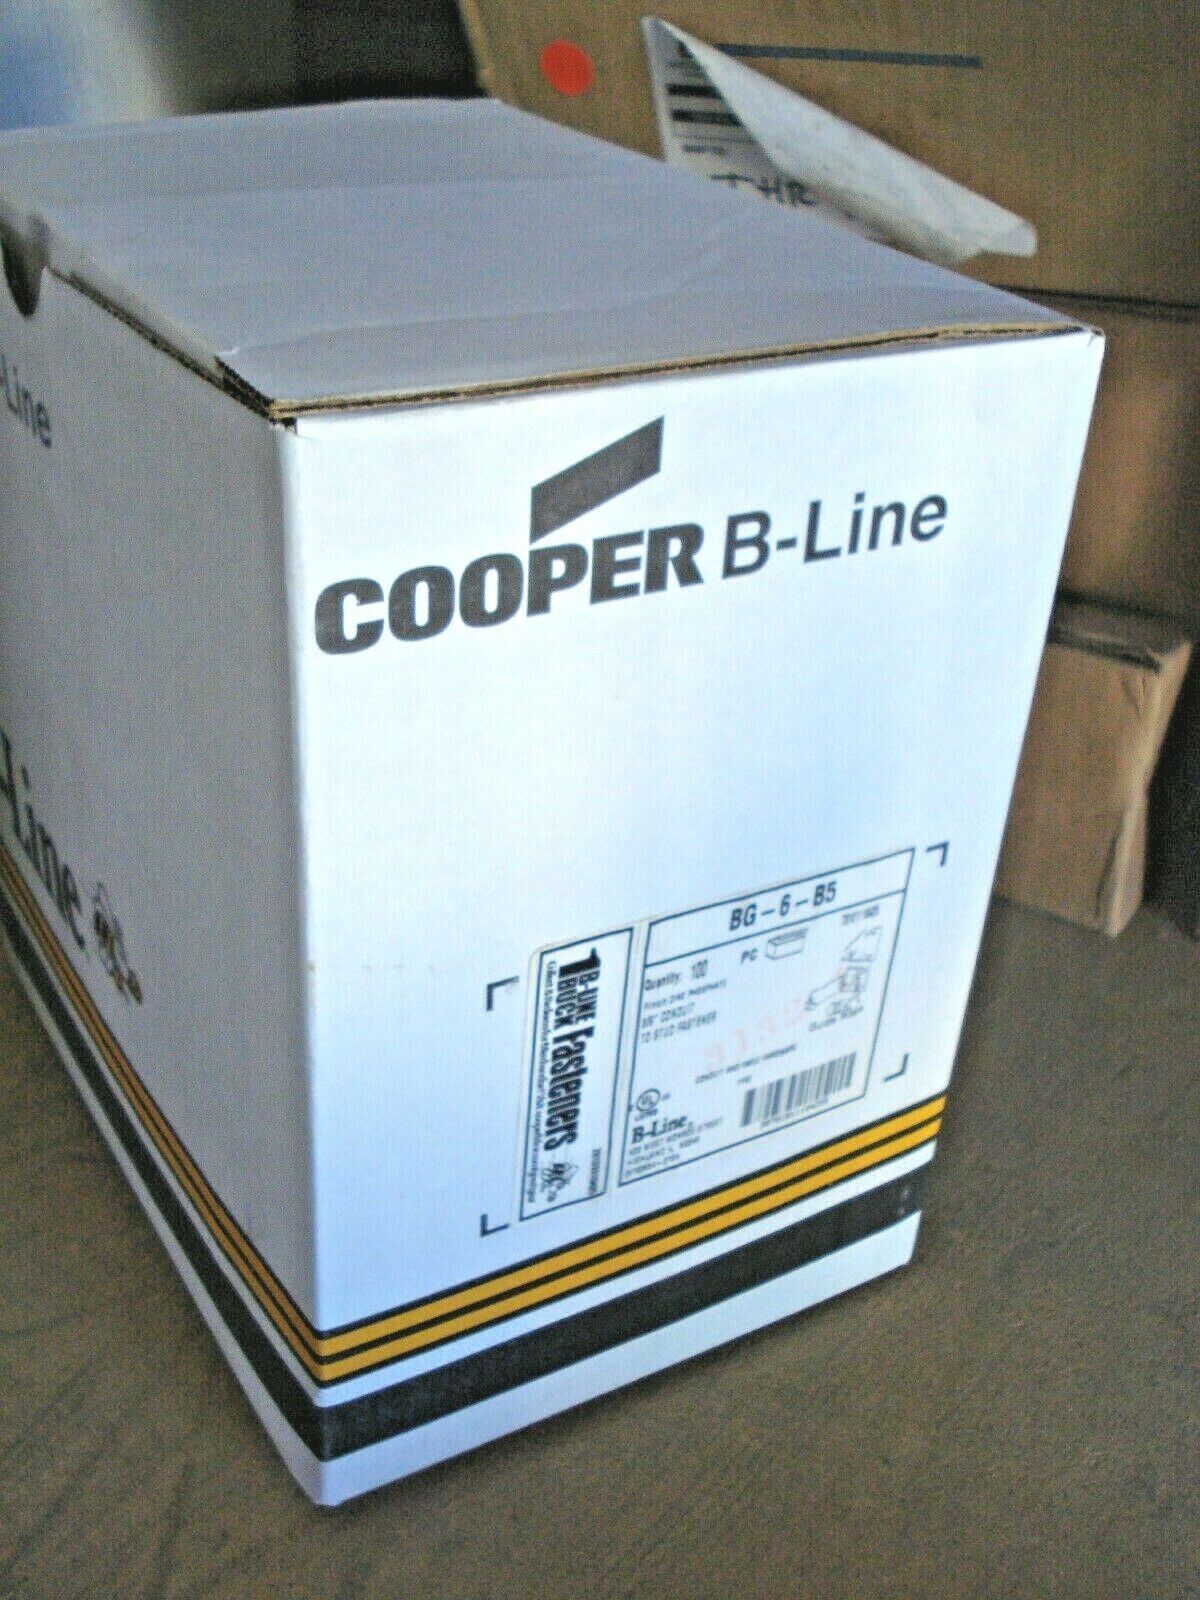 CASE OF 100 - COOPER B-LINE BG-6-B5 CONDUIT TO STUD CLIP 3/8” - CASE OF 100